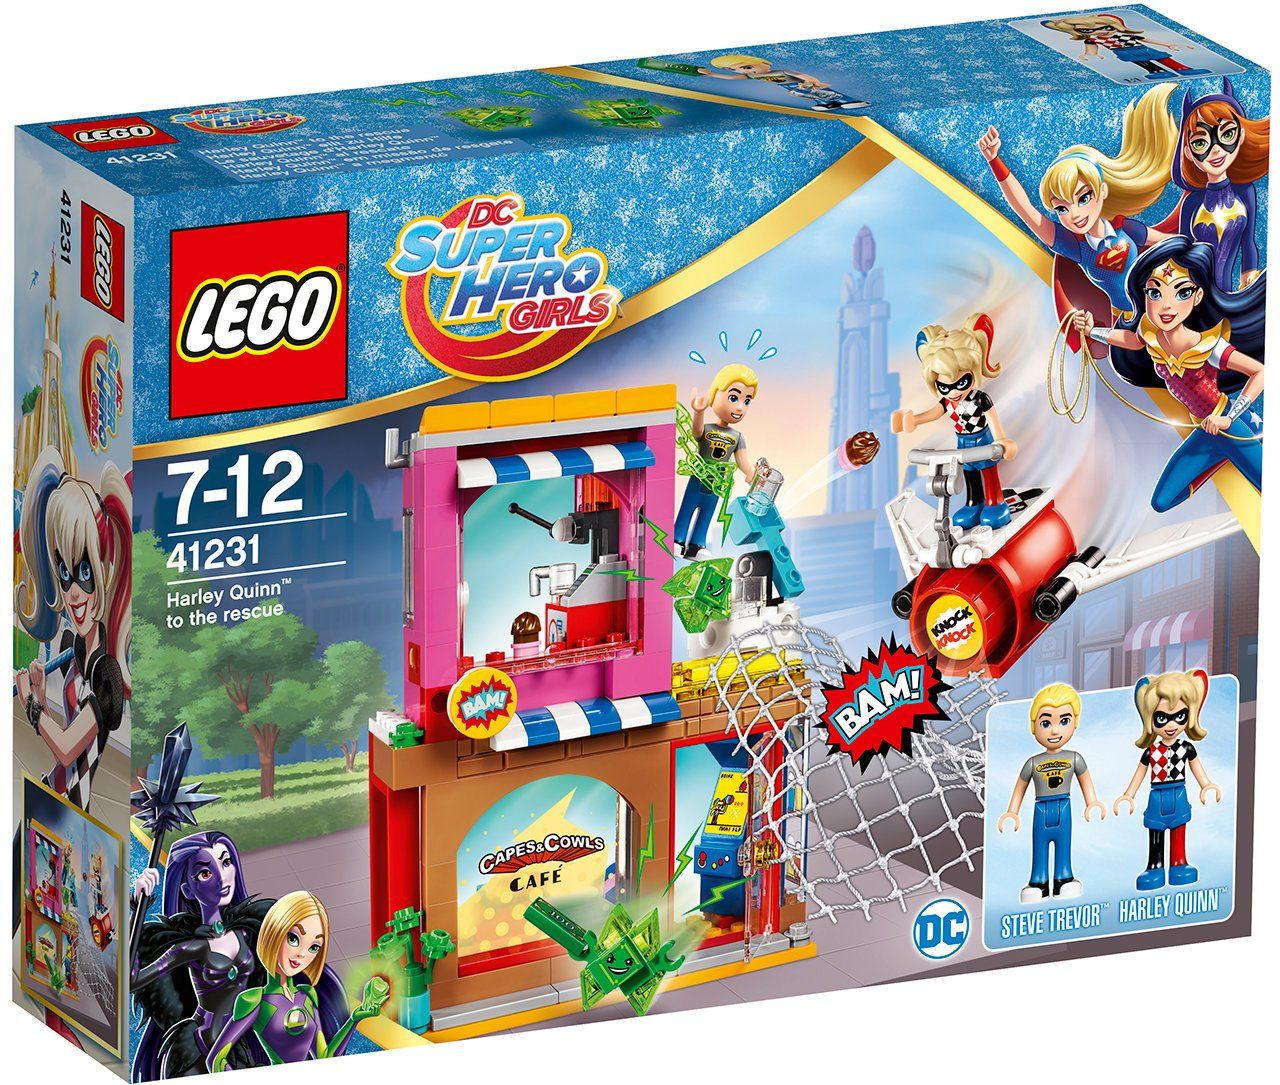 Lego DC Super Hero Girls Харли Квинн спешит на помощь